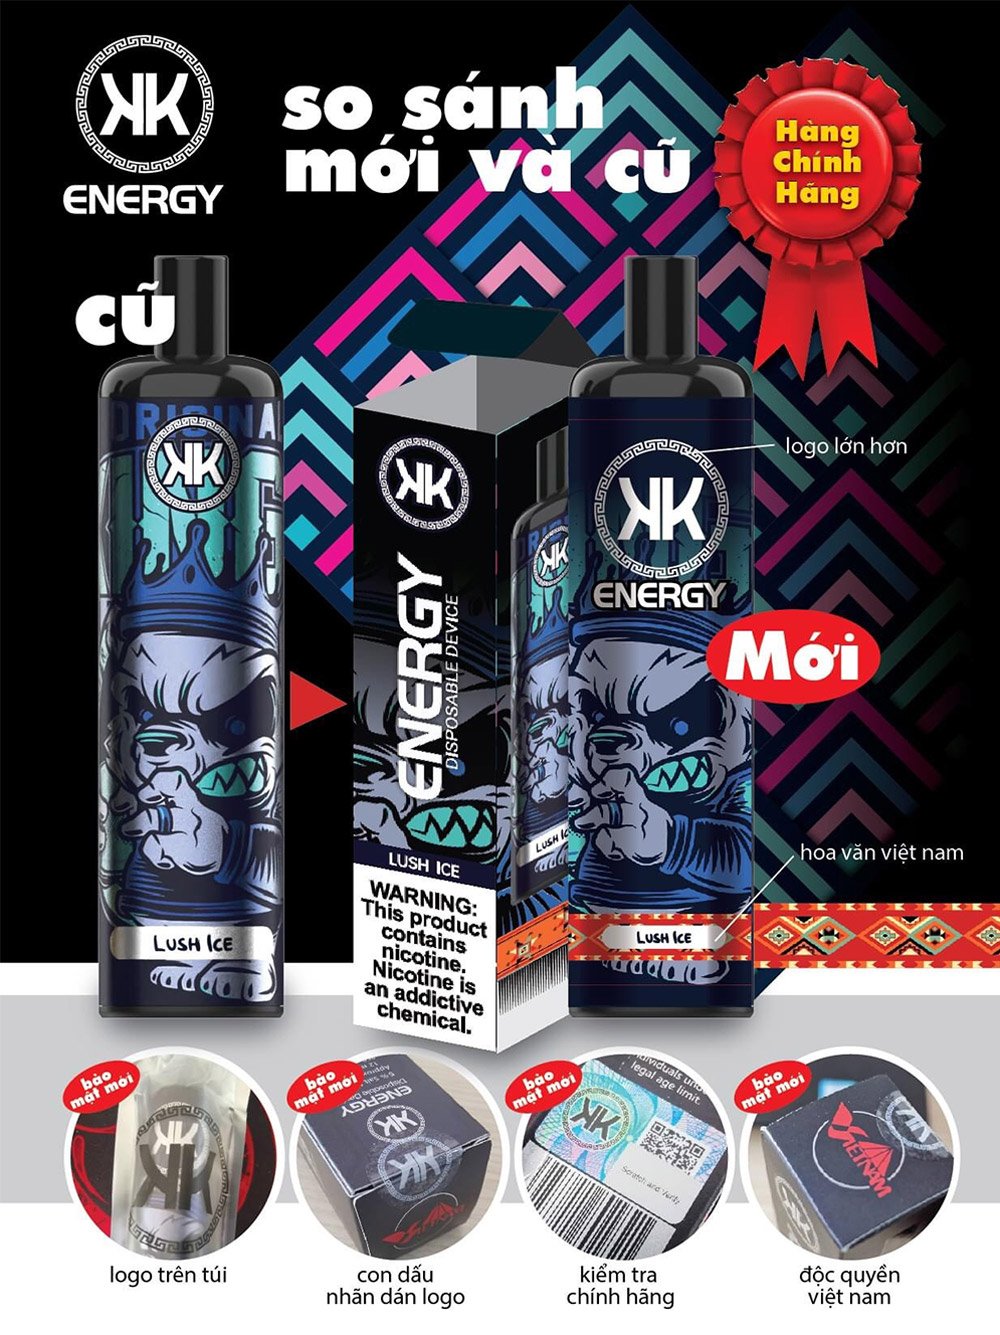 kk energy 5000